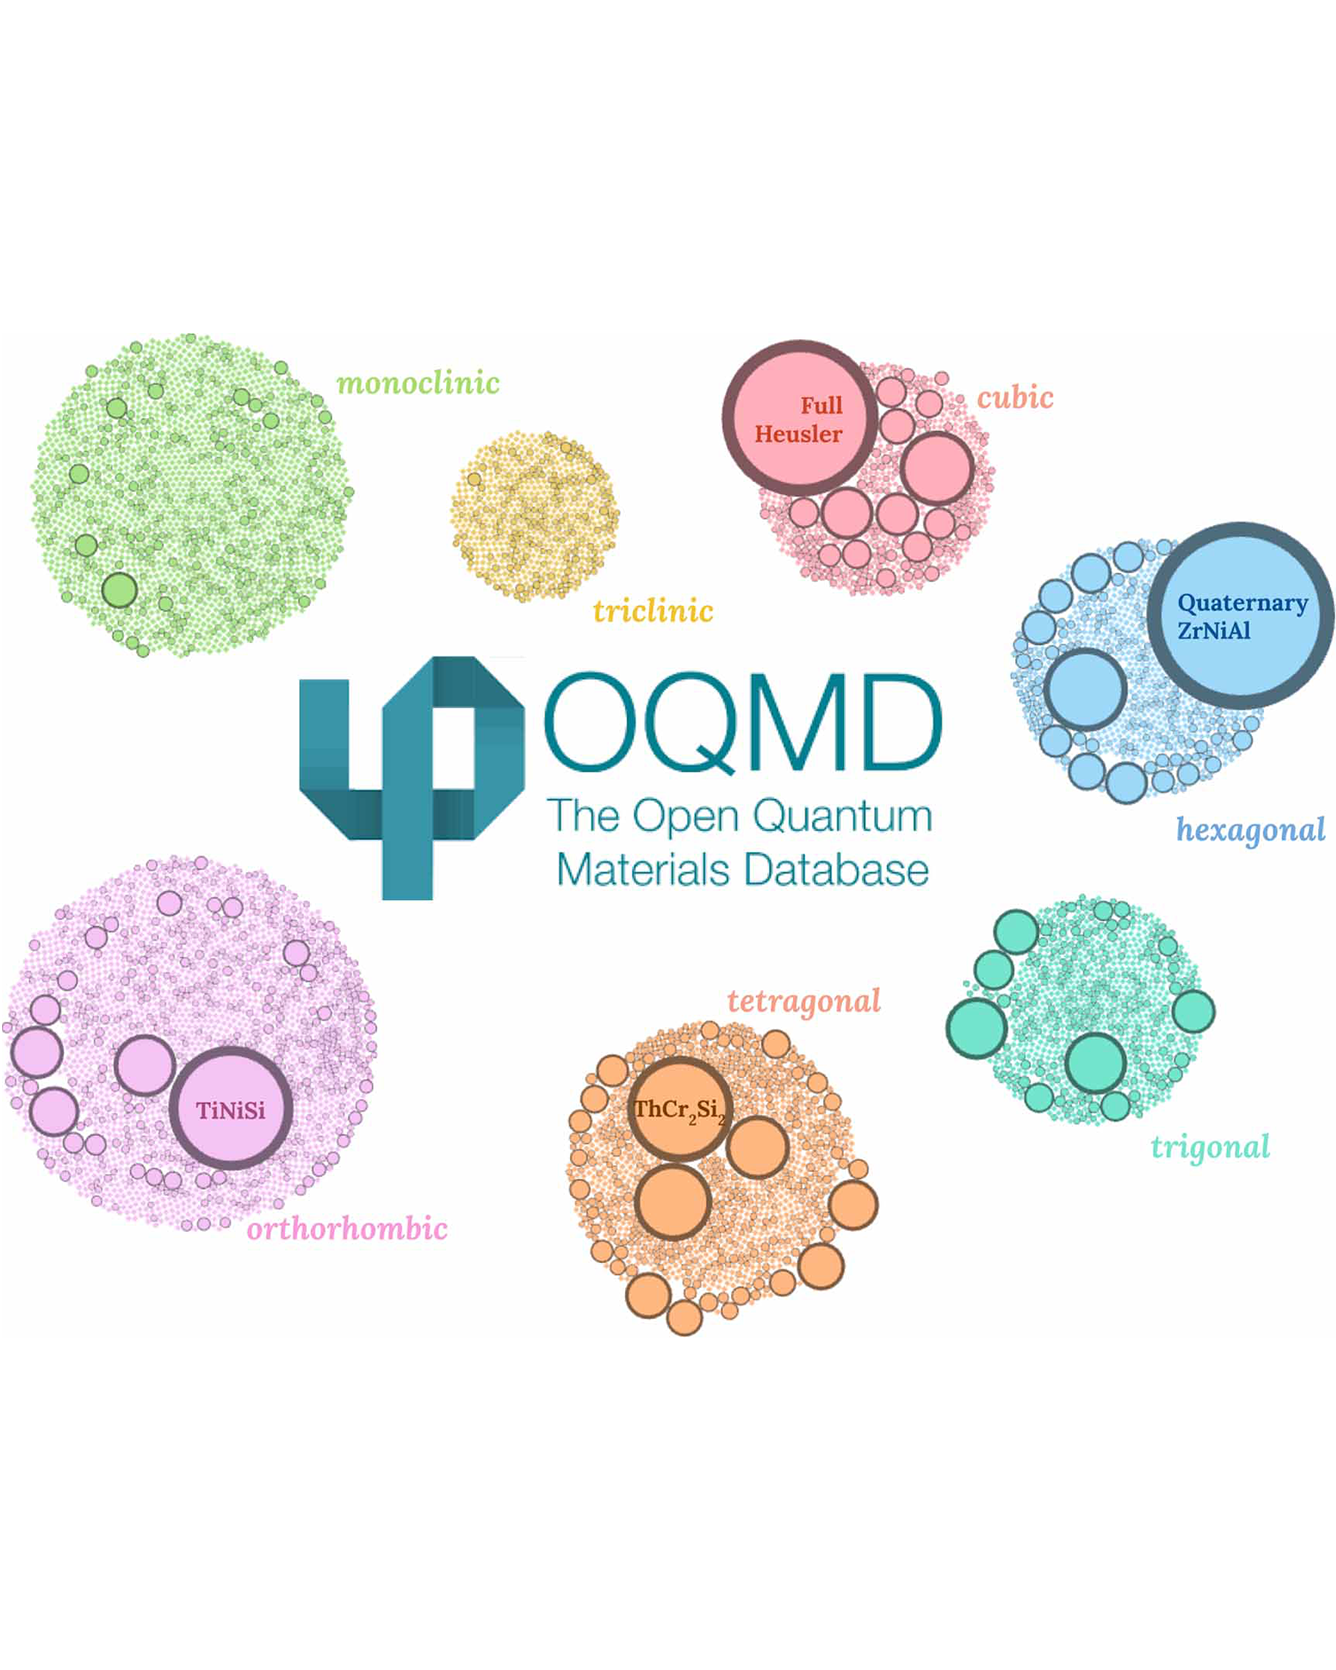 open quantum materials database image